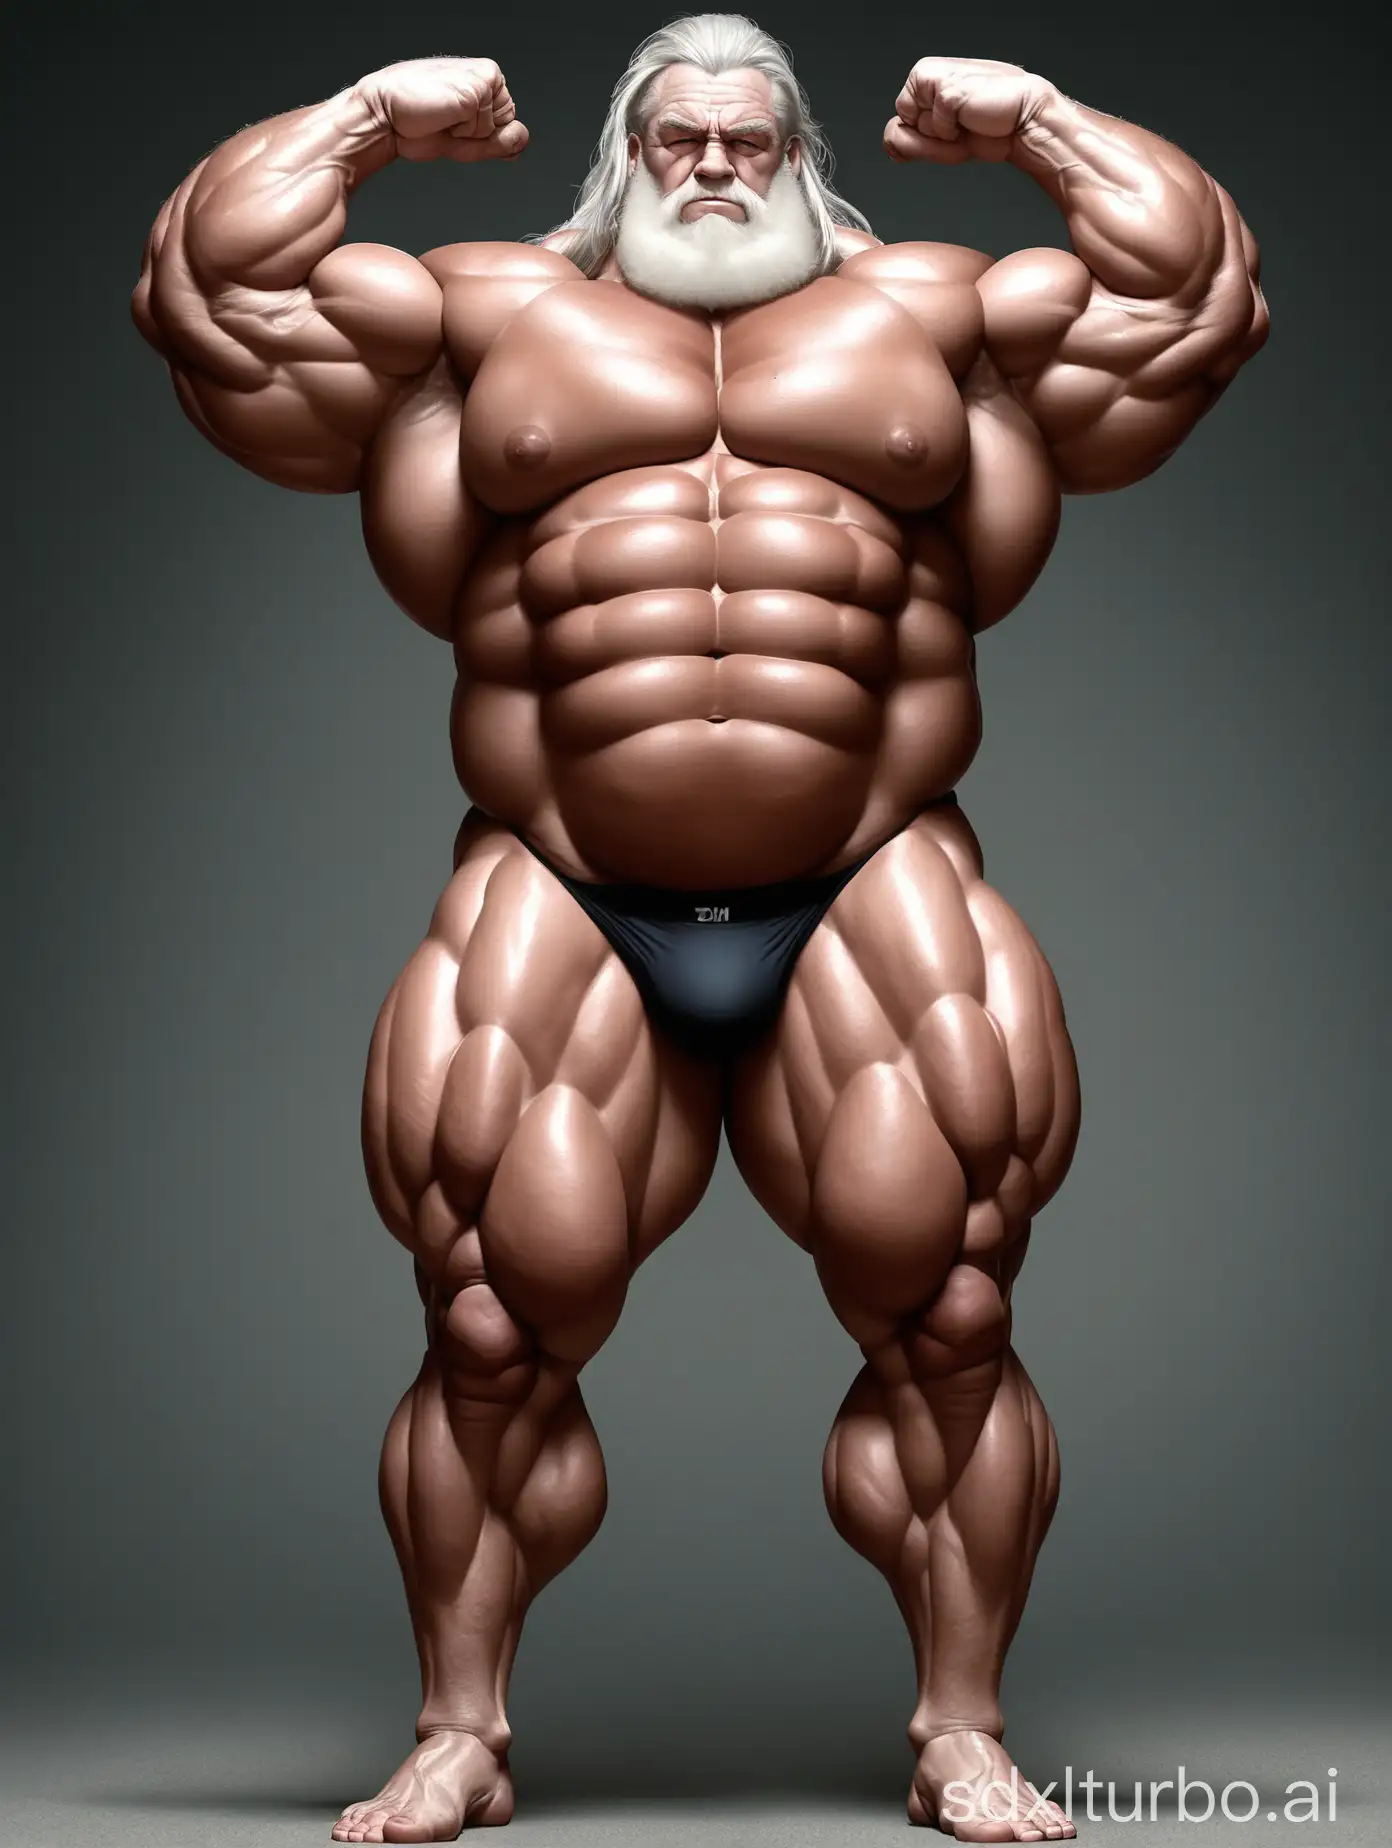 Massive-Muscle-Stud-Flexing-Giant-Biceps-in-Underwear